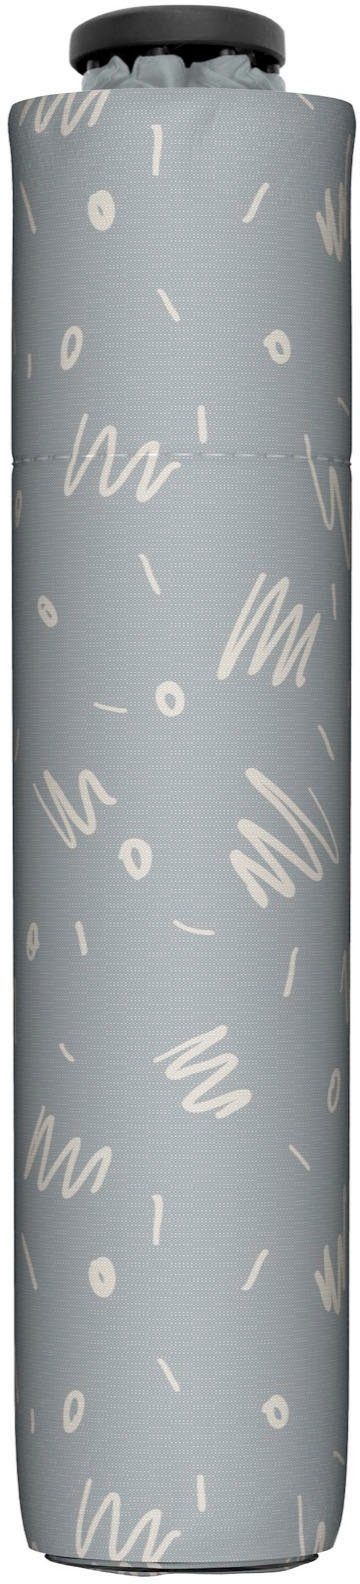 Taschenregenschirm doppler® cool grey Minimally, zero,99